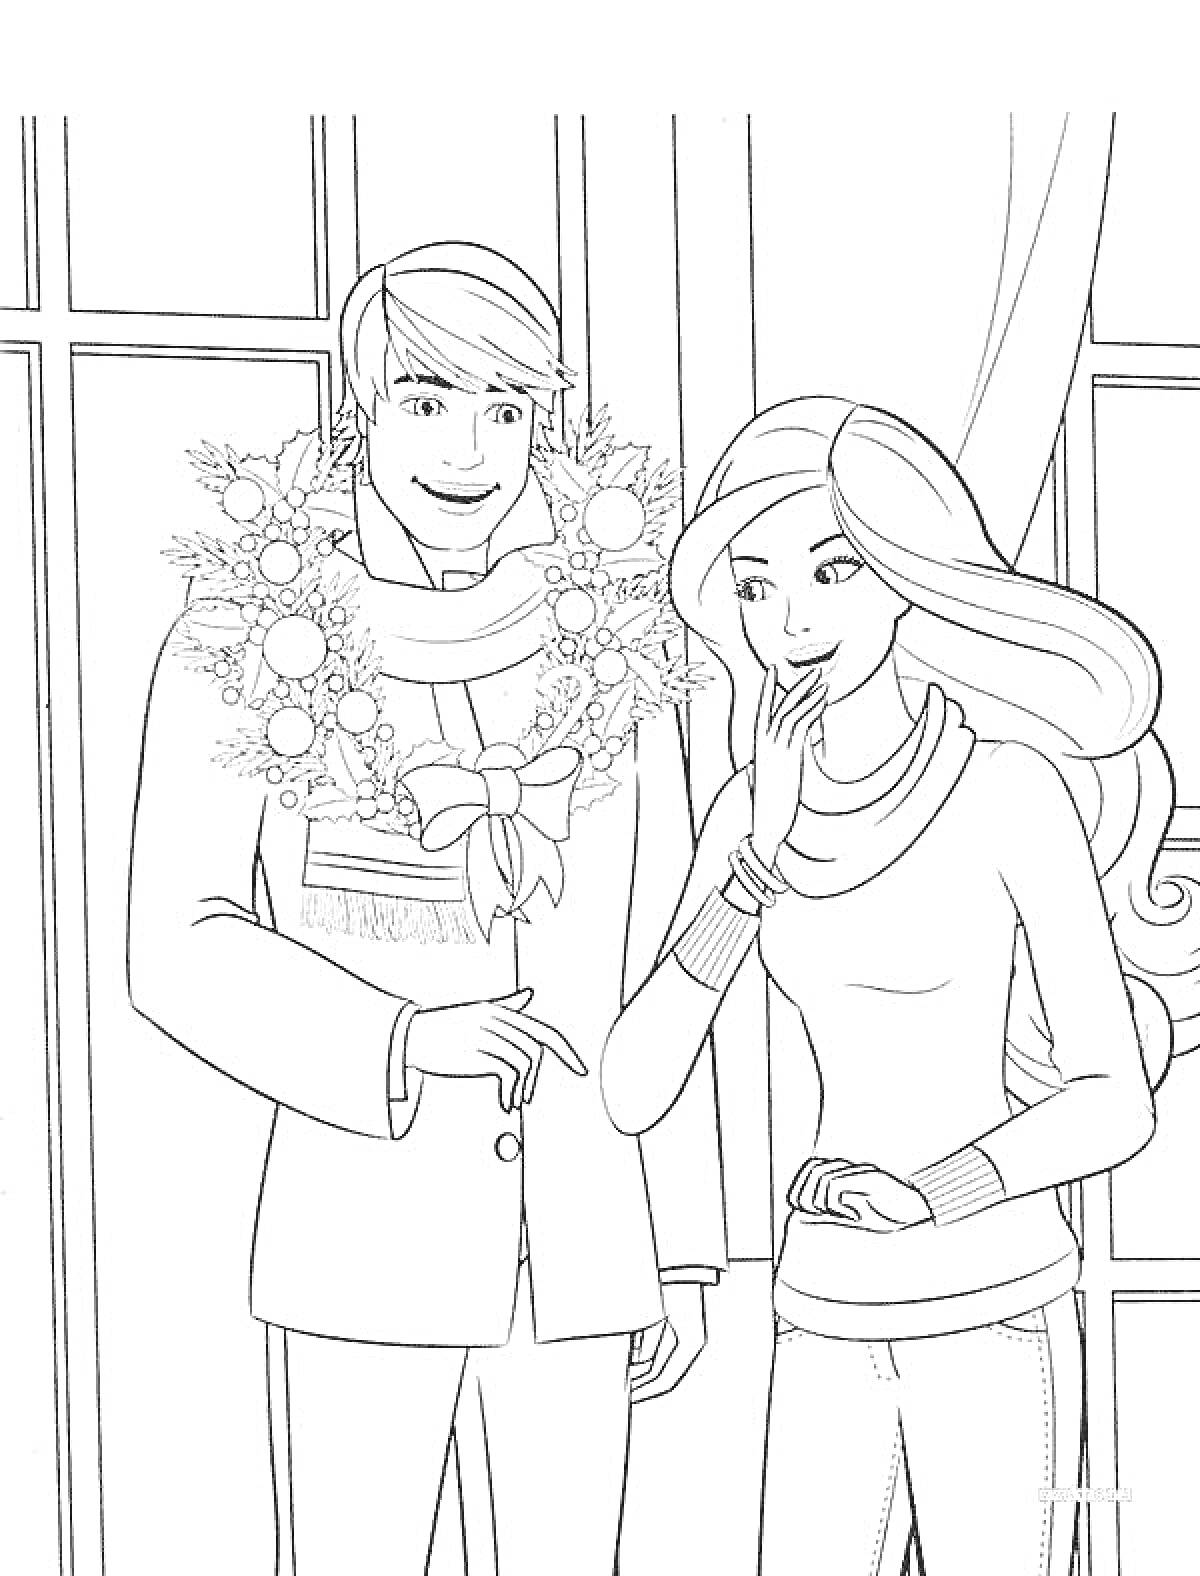 РаскраскаКен и подруга у окна с венком, украшенным лентами и шарами